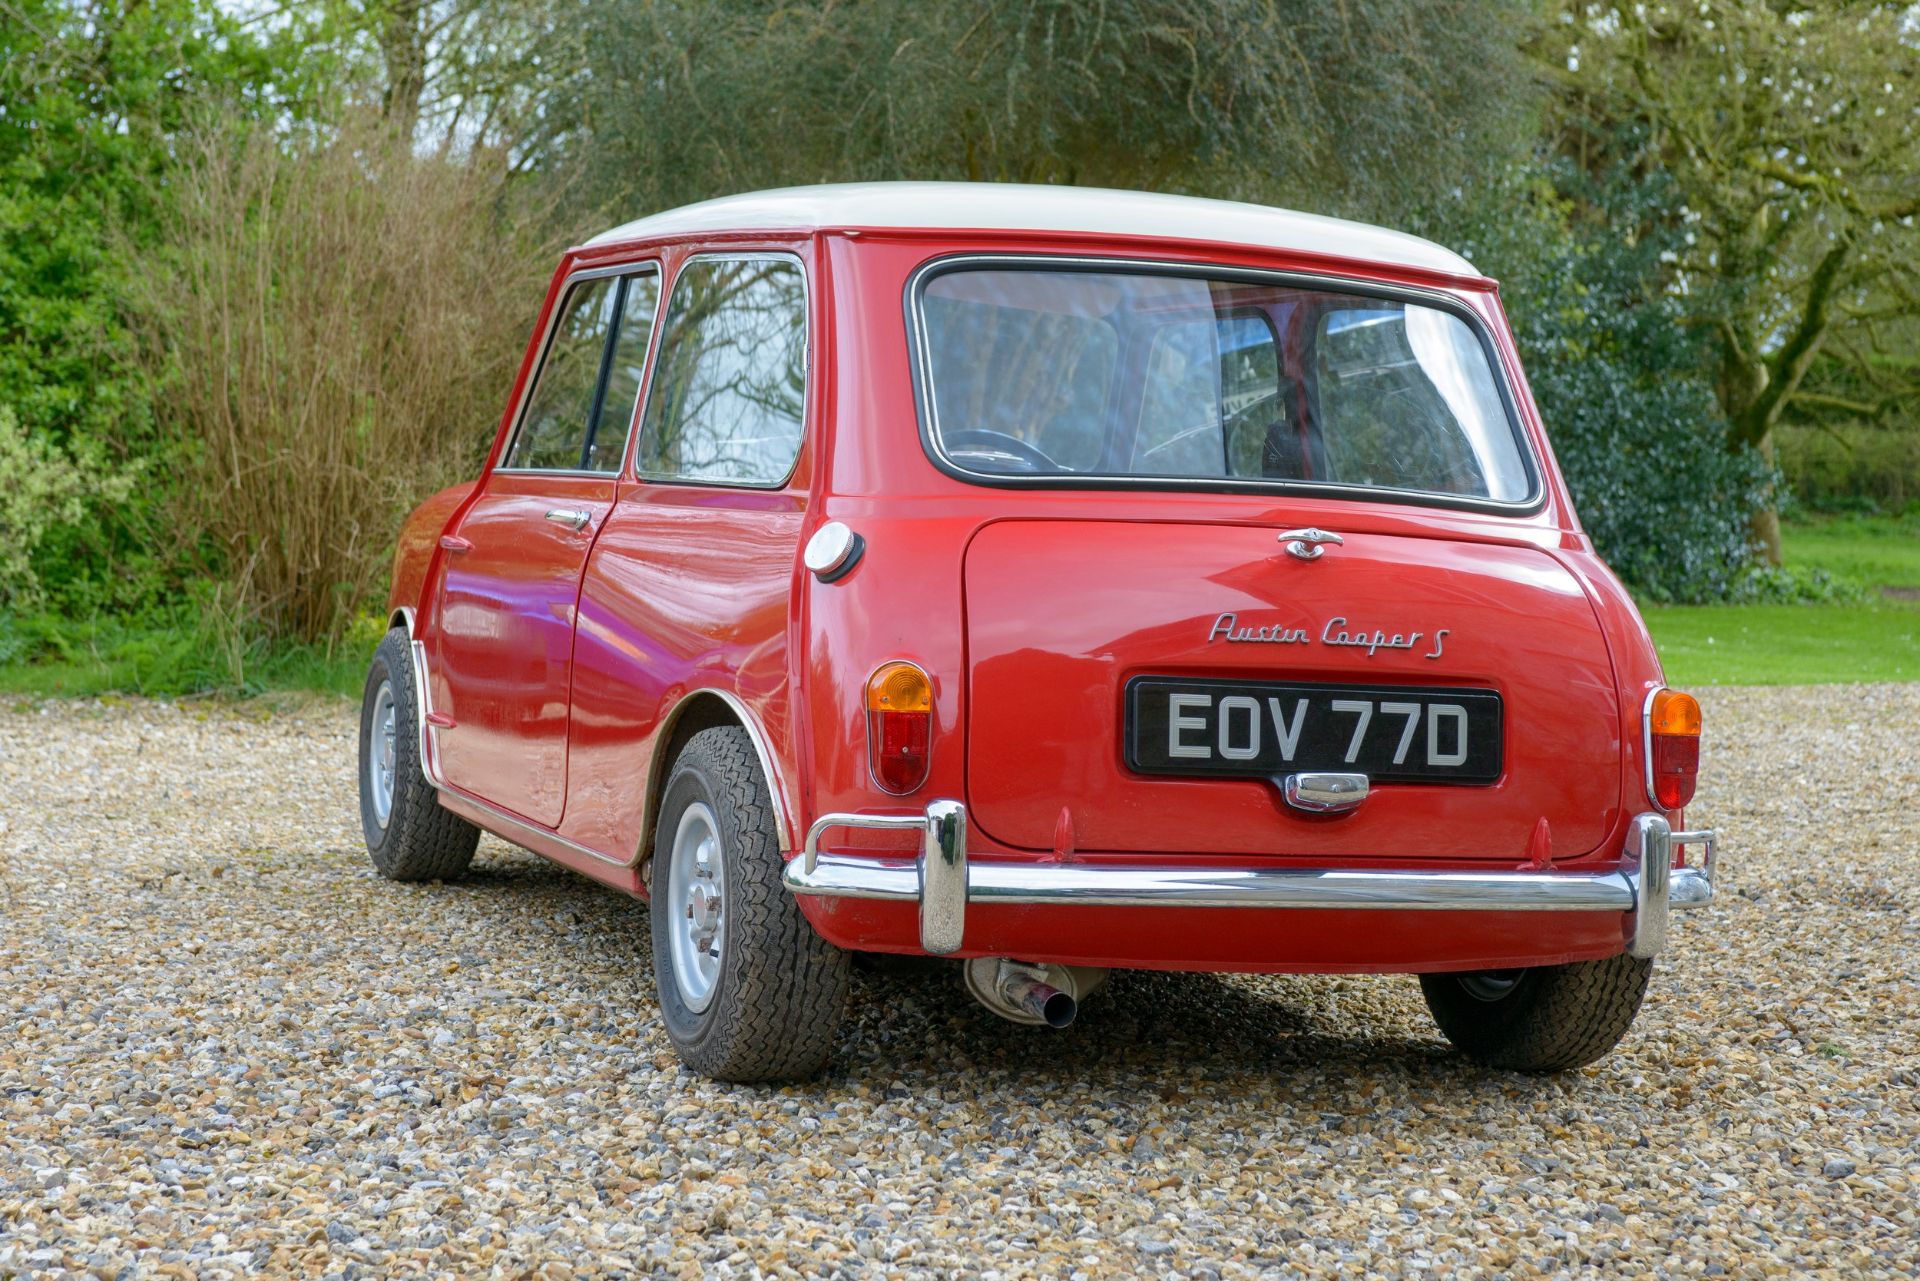 1966 AUSTIN COOPER 1275 'S' Registration Number: EOV 77D Chassis Number: See description Recorded - Image 8 of 37